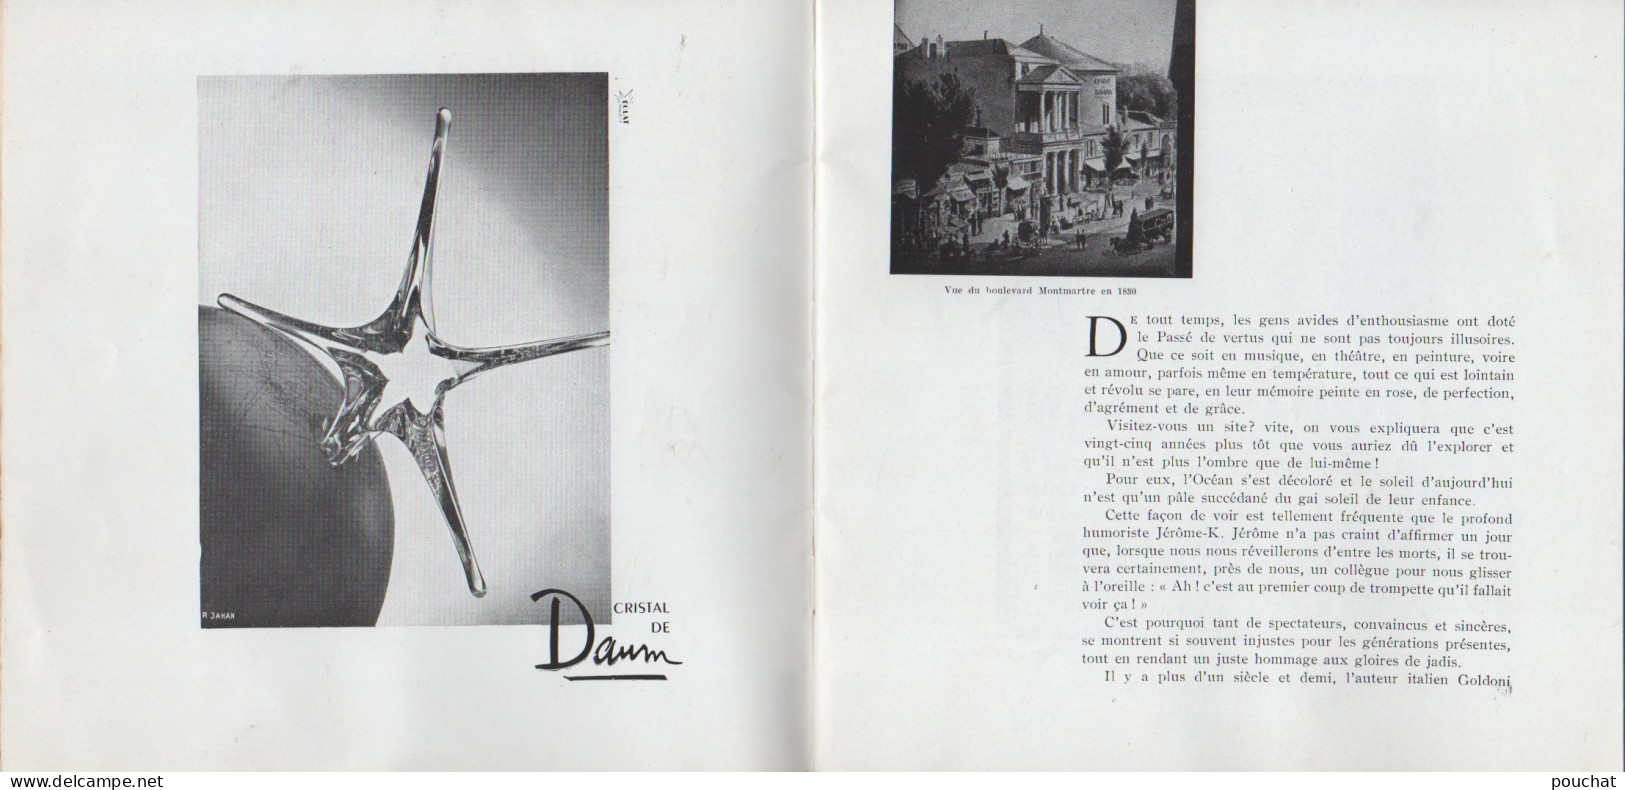 PARIS - LES FRERES JACQUES - THEATRE DE VARIETES - PROGRAMME 1958 -59 - BELLES PUBLICITES - ILLUSTRATEUR -TOUS LES SCANS - Programmes